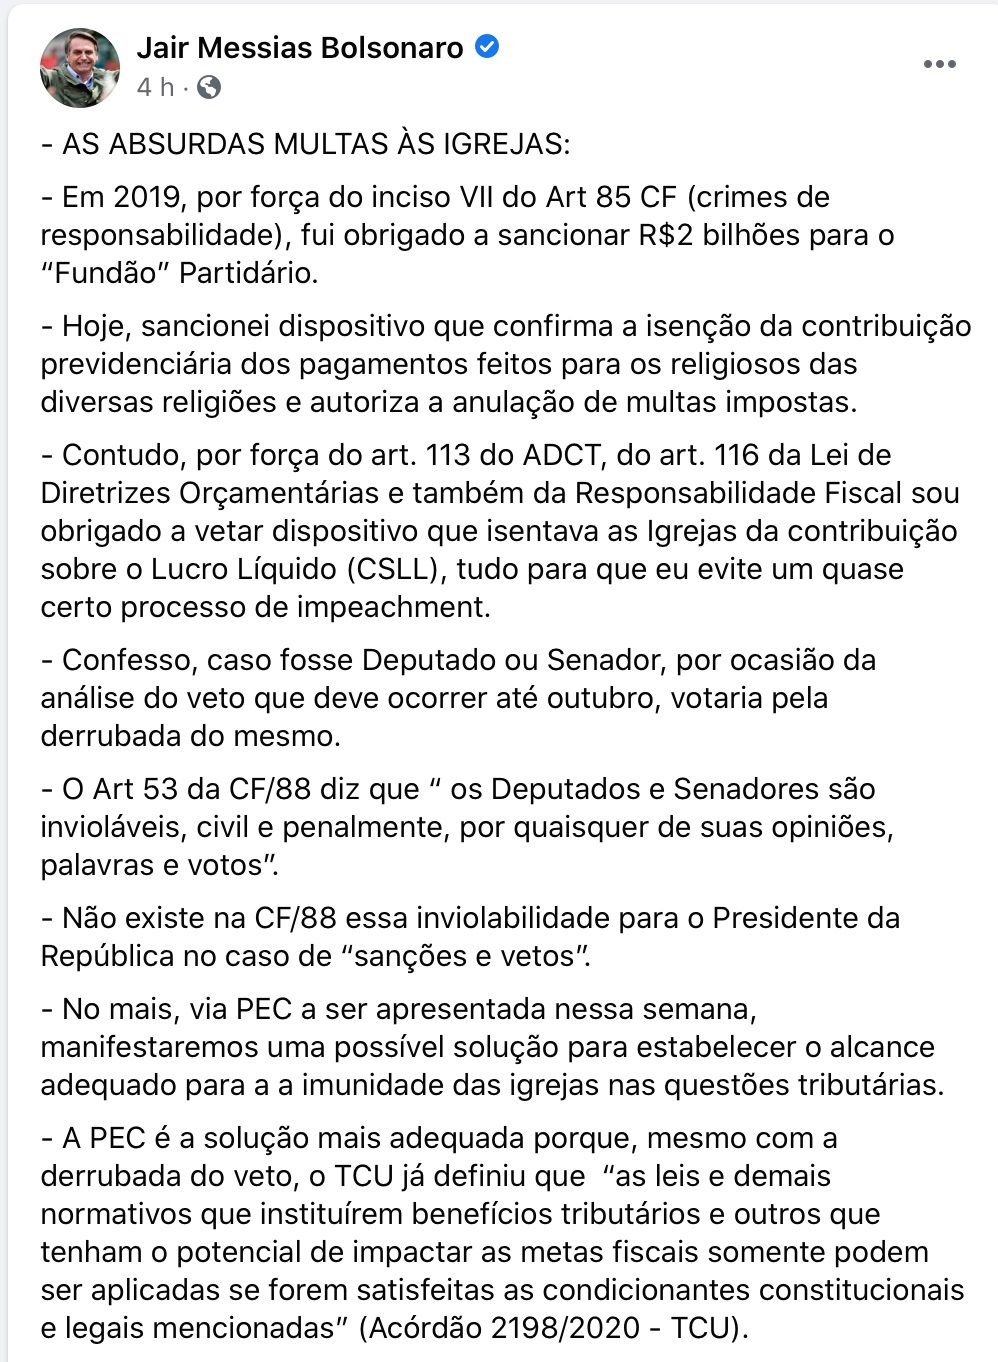 Print de publicação do Facebook de Bolsonaro